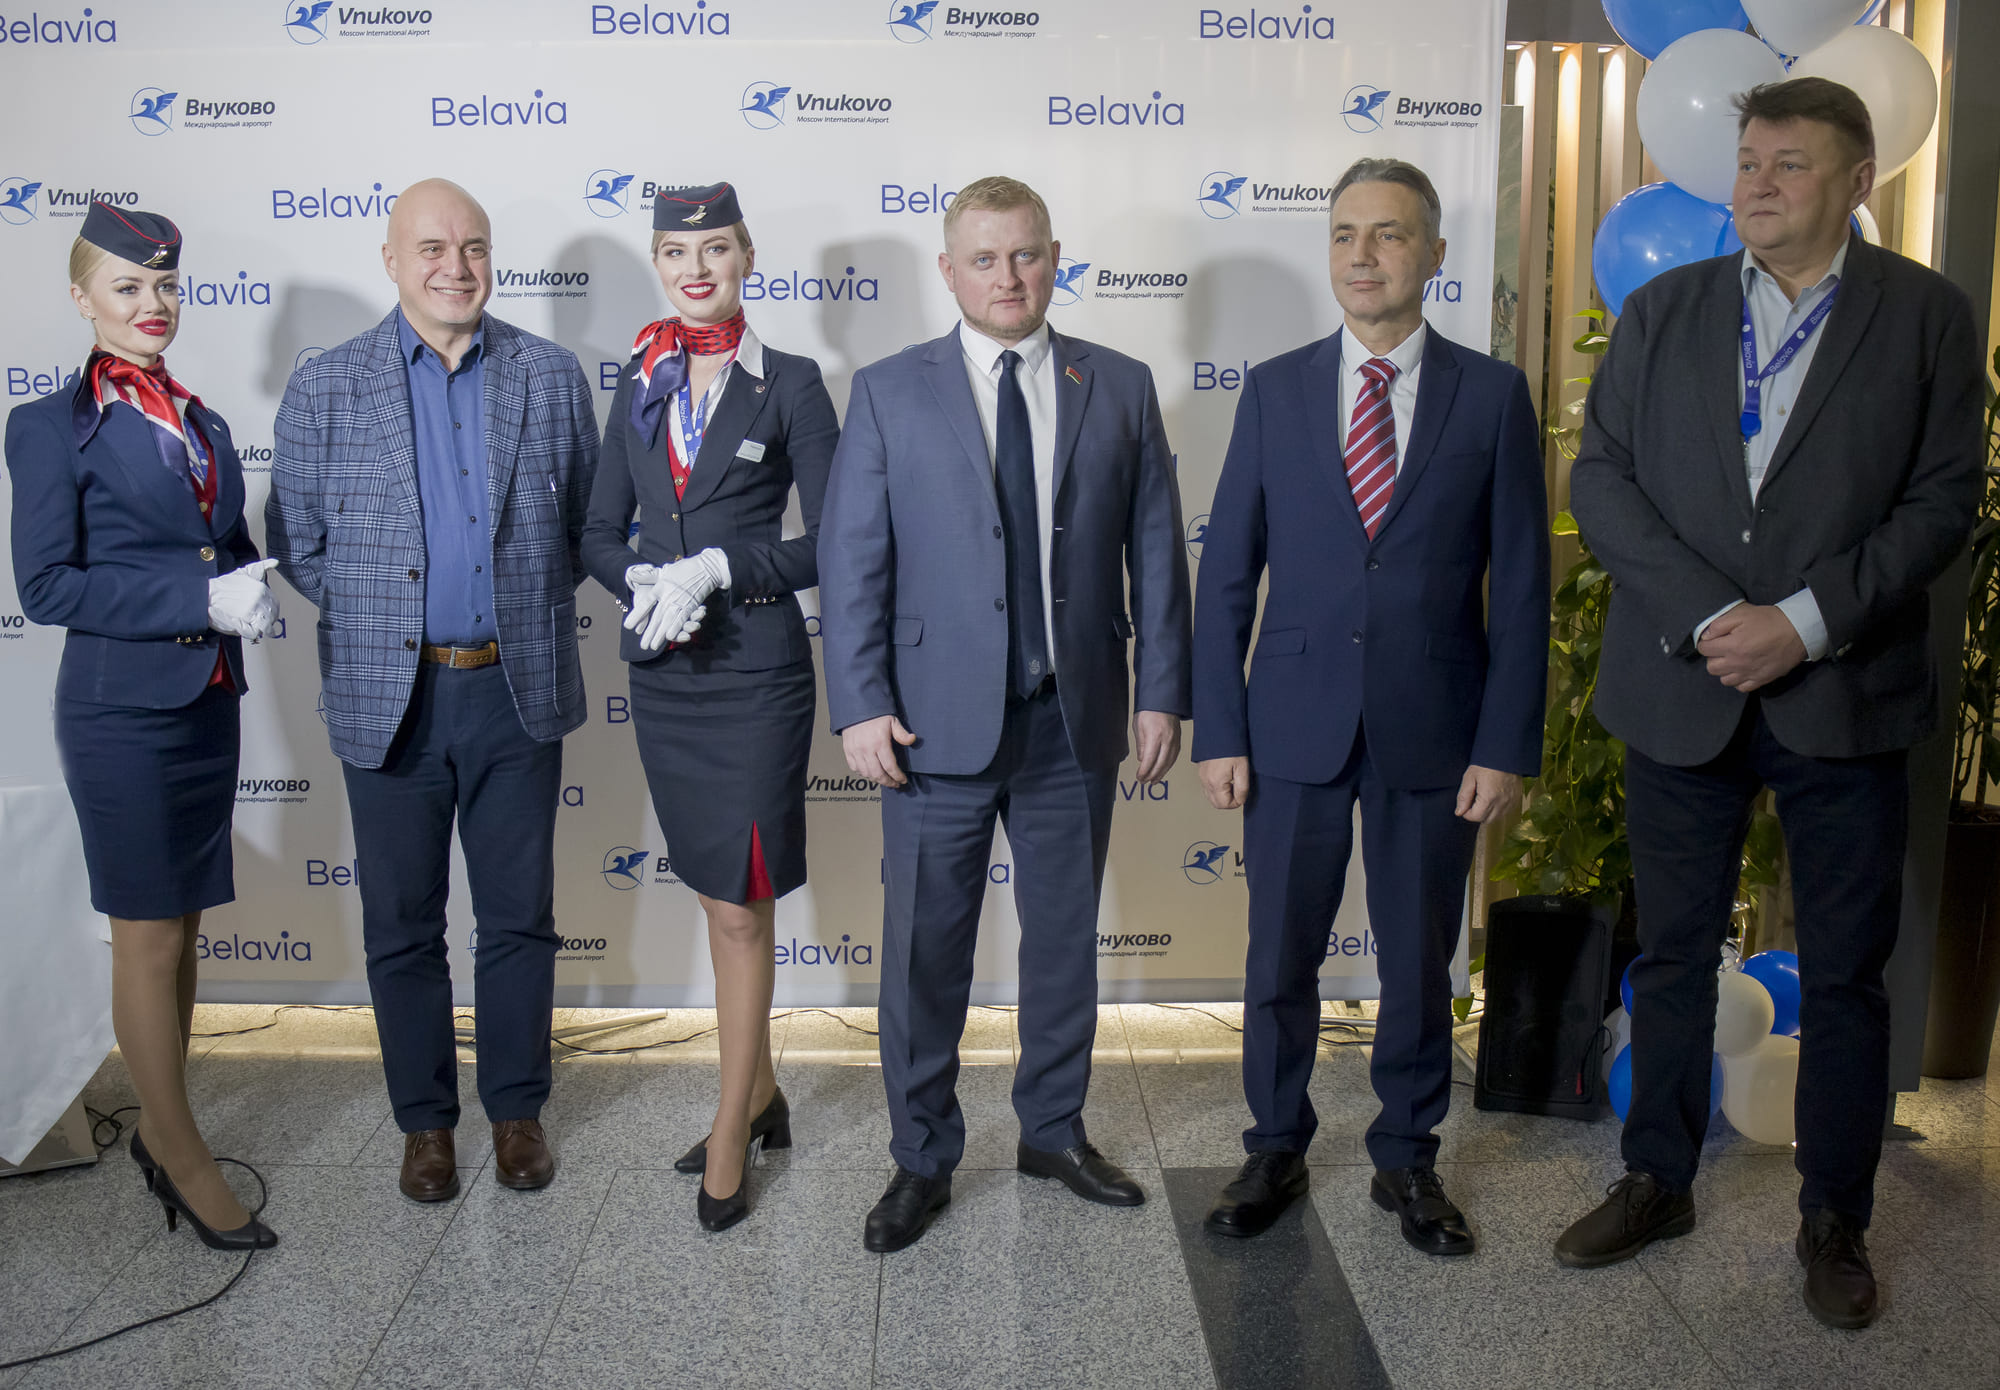 В аэропорту Внуково состоялась торжественная церемония открытия нового регулярного рейса по маршруту Москва - Гомель - Москва